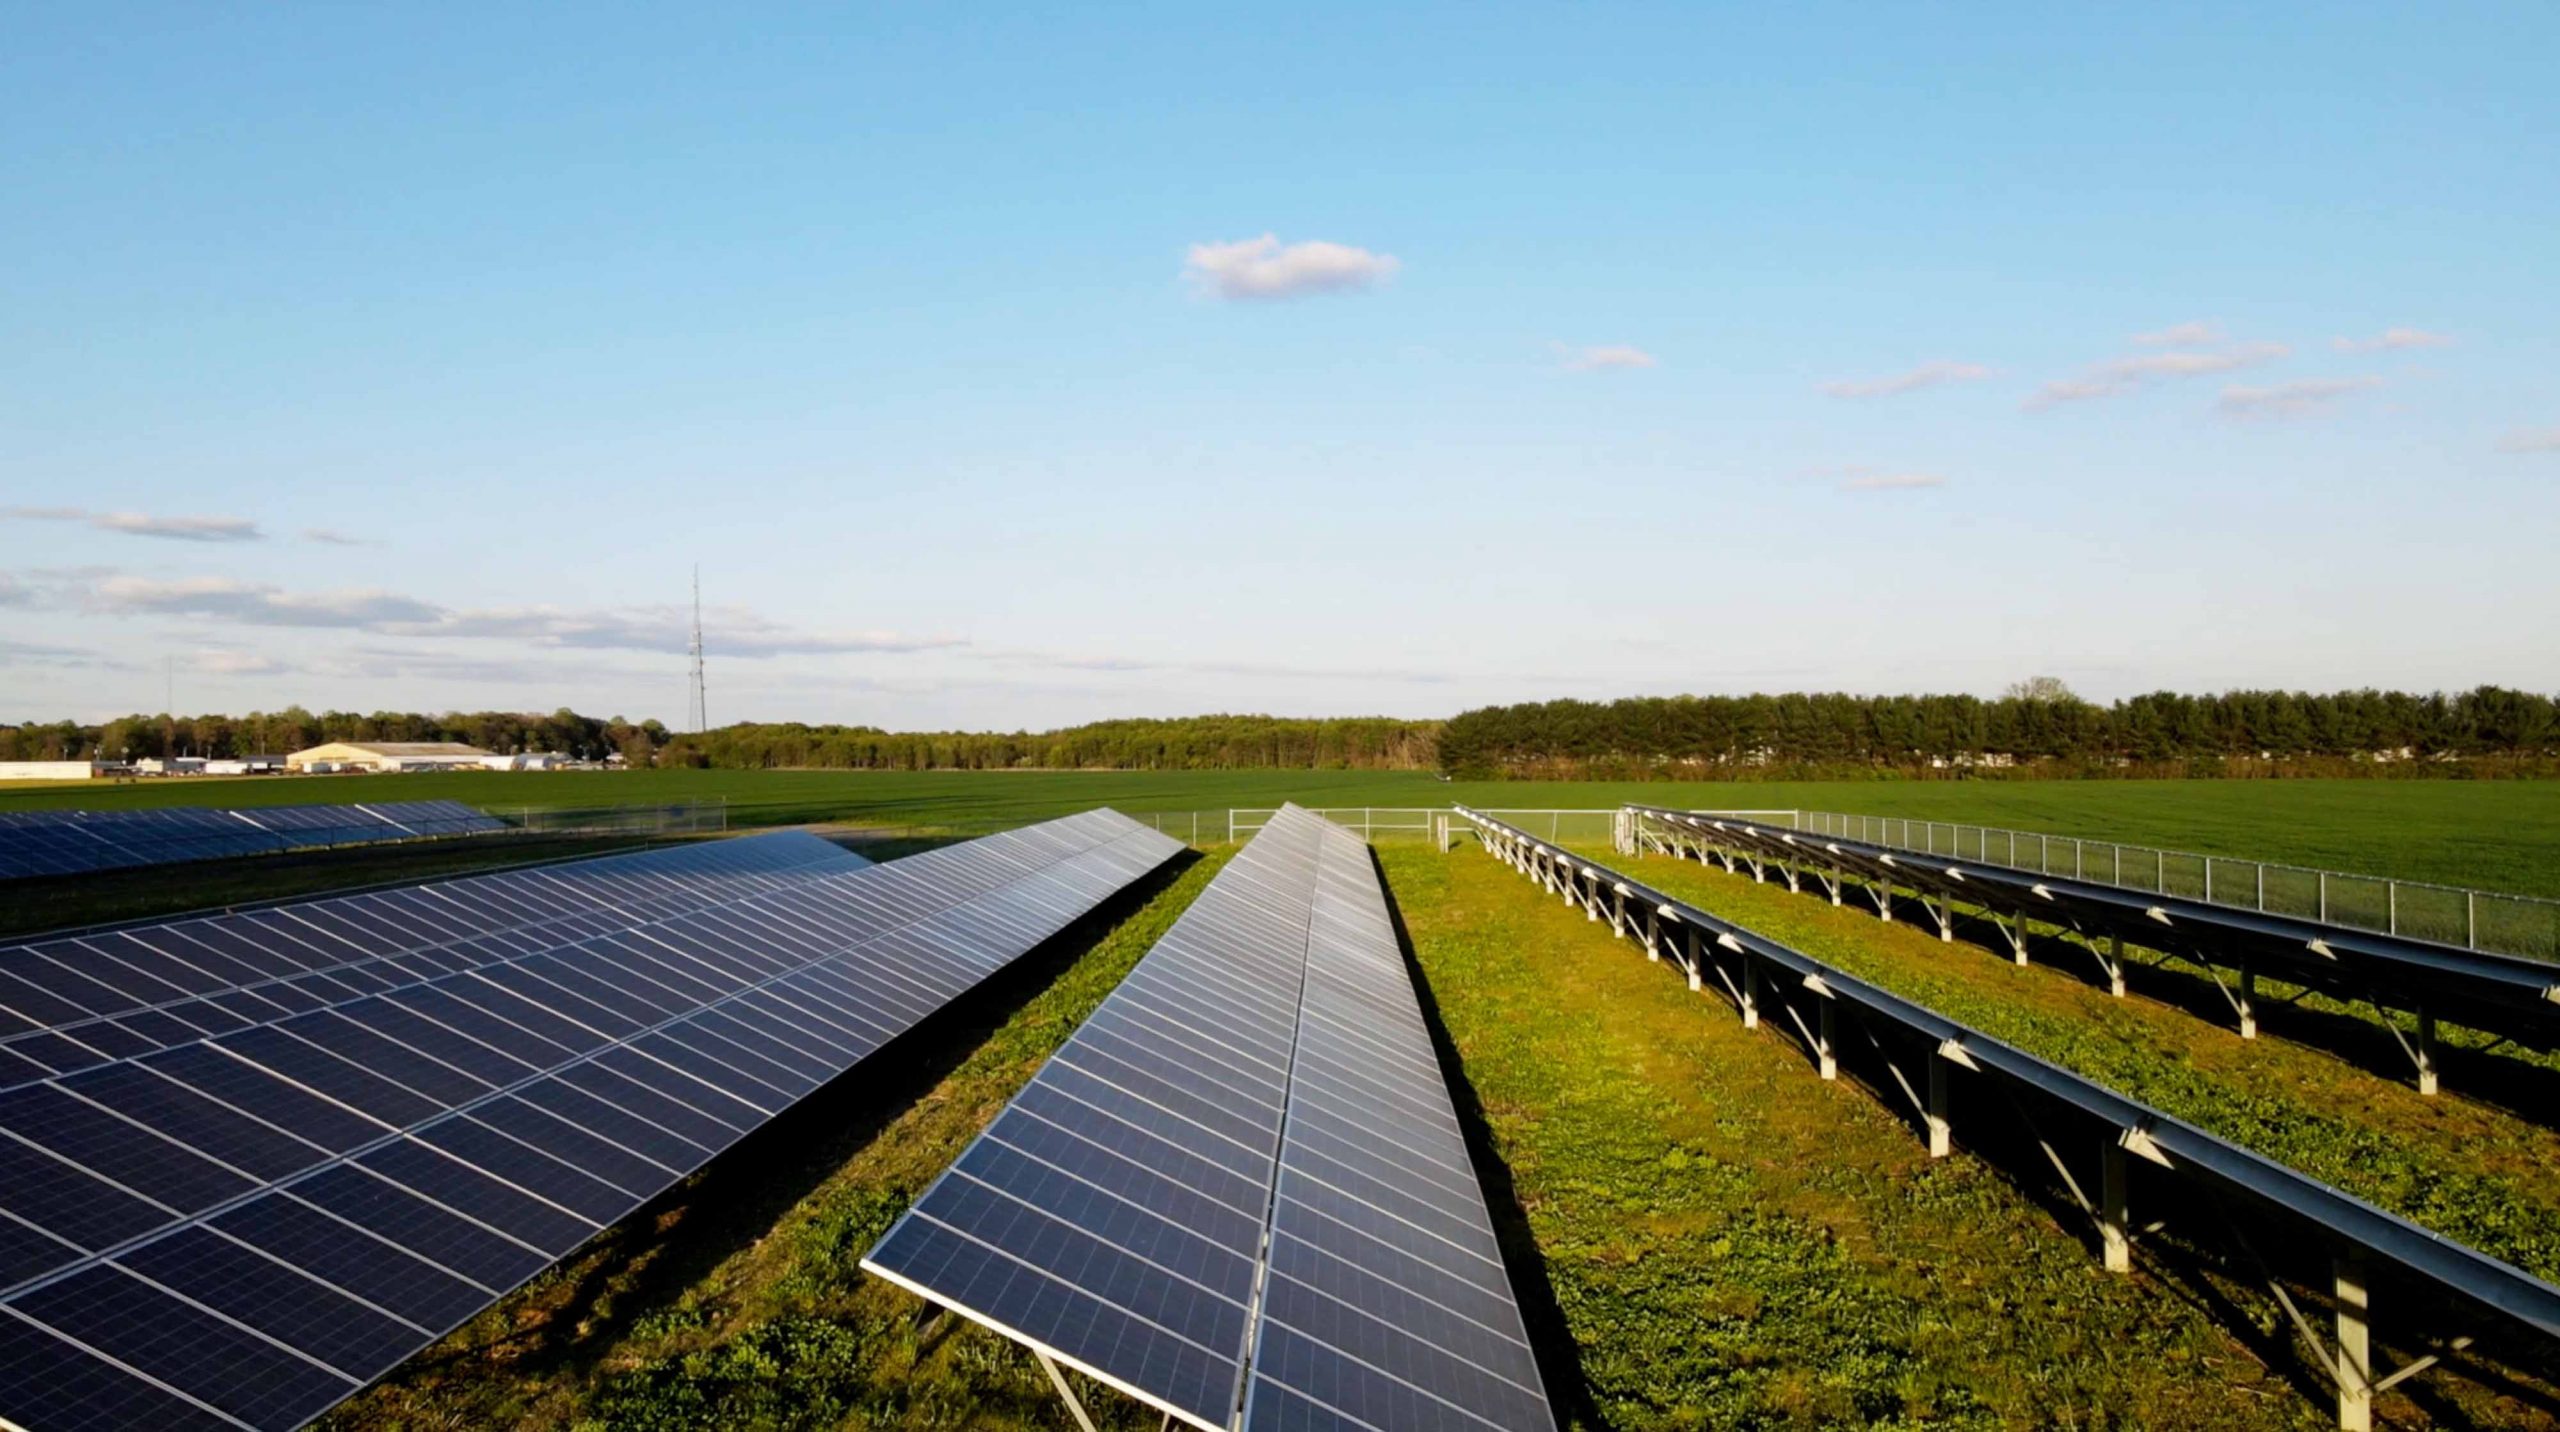 Solar panels in a green field.